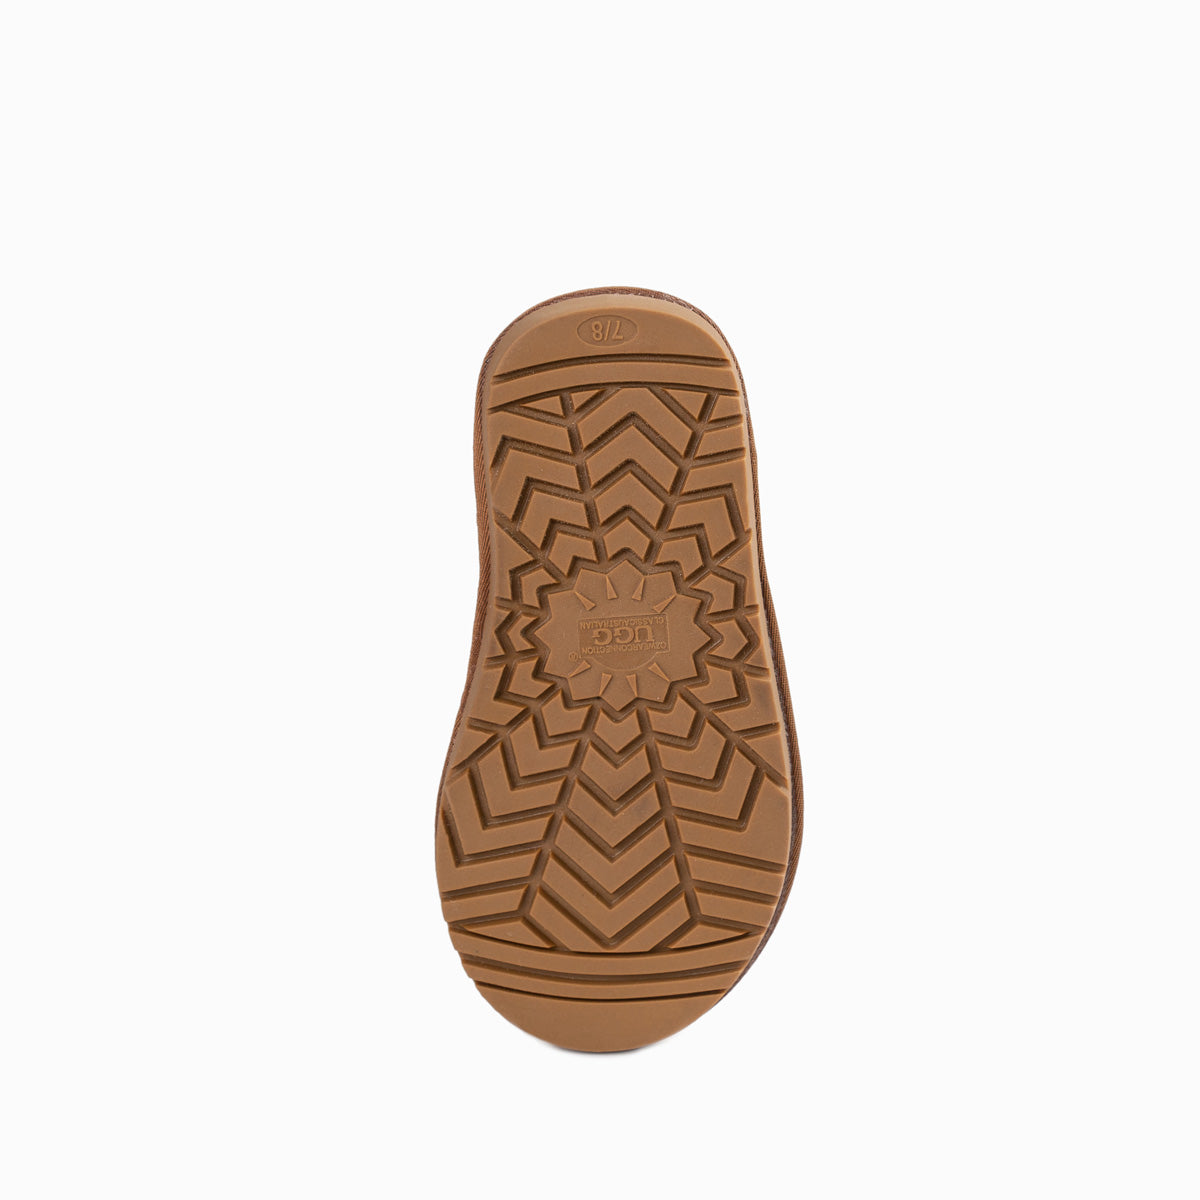 Ugg Kids Classic Mini (Glitz) Boots (Water Resistant)-Kid Boots-PEROZ Accessories